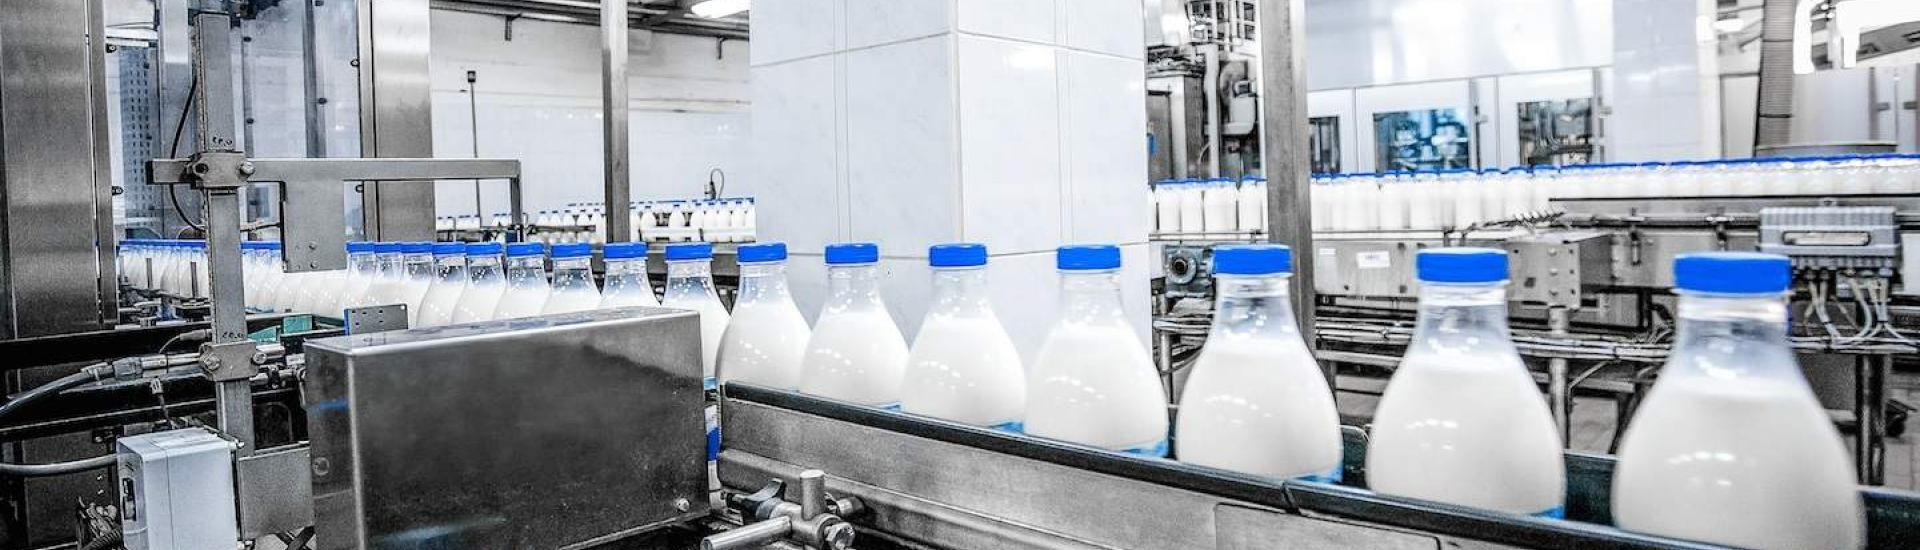 Milk automation